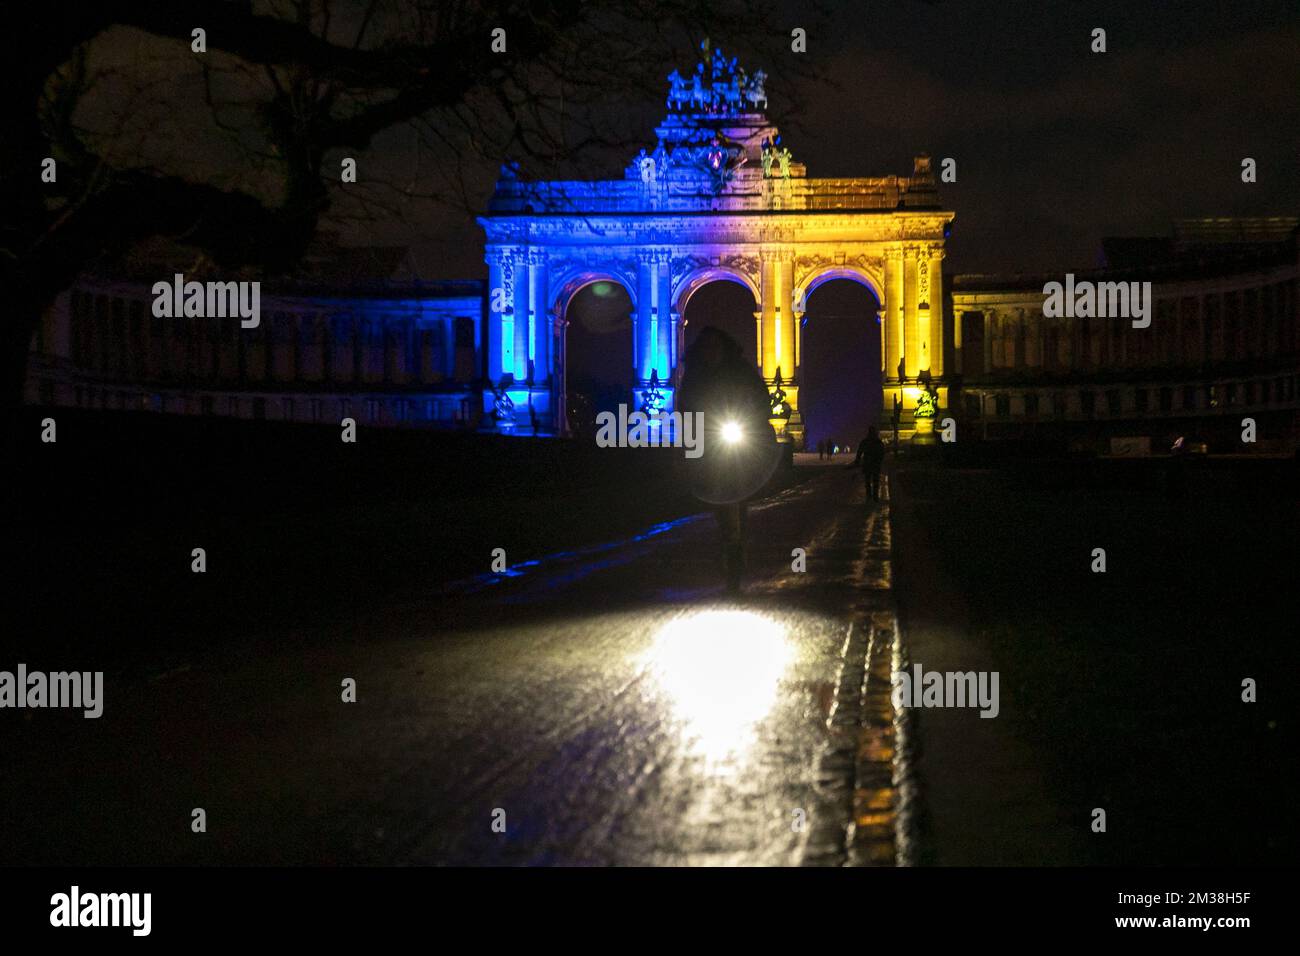 L'immagine mostra l'arco trionfale (arco di trionfo - triomfboog) al Jubelpark - Parc du Cinquantenaire, che è stato illuminato nei colori della bandiera Ucraina, per mostrare sostegno al popolo ucraino, a Bruxelles, giovedì 24 febbraio 2022. Ieri sera, la Russia ha deciso di invadere diverse regioni ucraine. BELGA FOTO HATIM KAGHAT Foto Stock